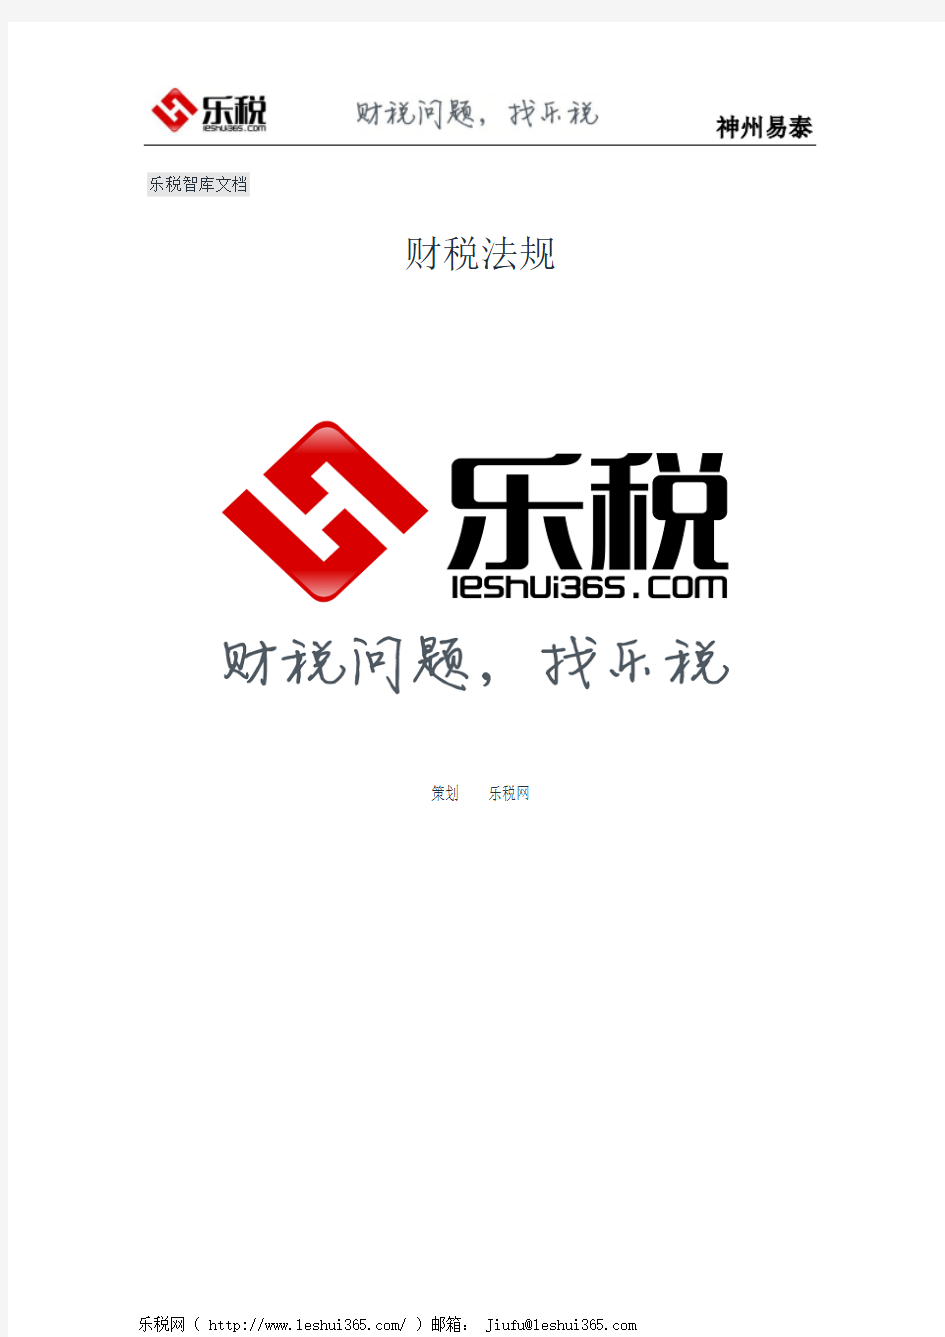 广州市地方税务局关于依法申报缴纳社会保险费的通告